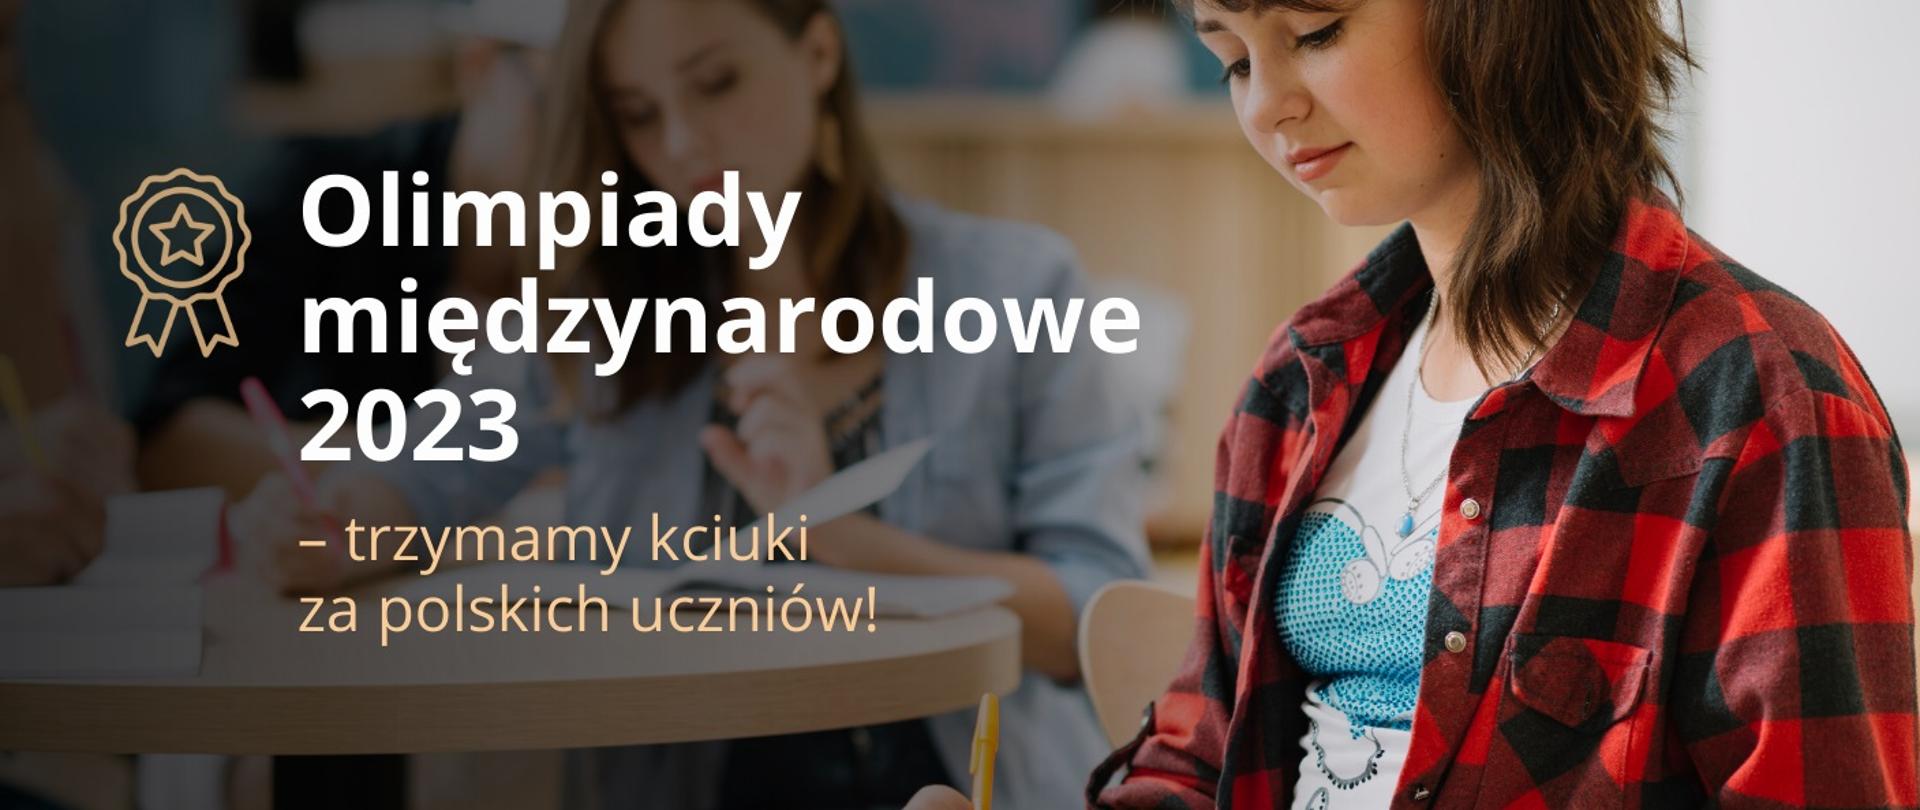 Grafika, młoda dziewczyna w koszuli w czerwoną kratę, obok napis Olimpiady międzynarodowe 2023 - trzymamy kciuki za polskich uczniów.